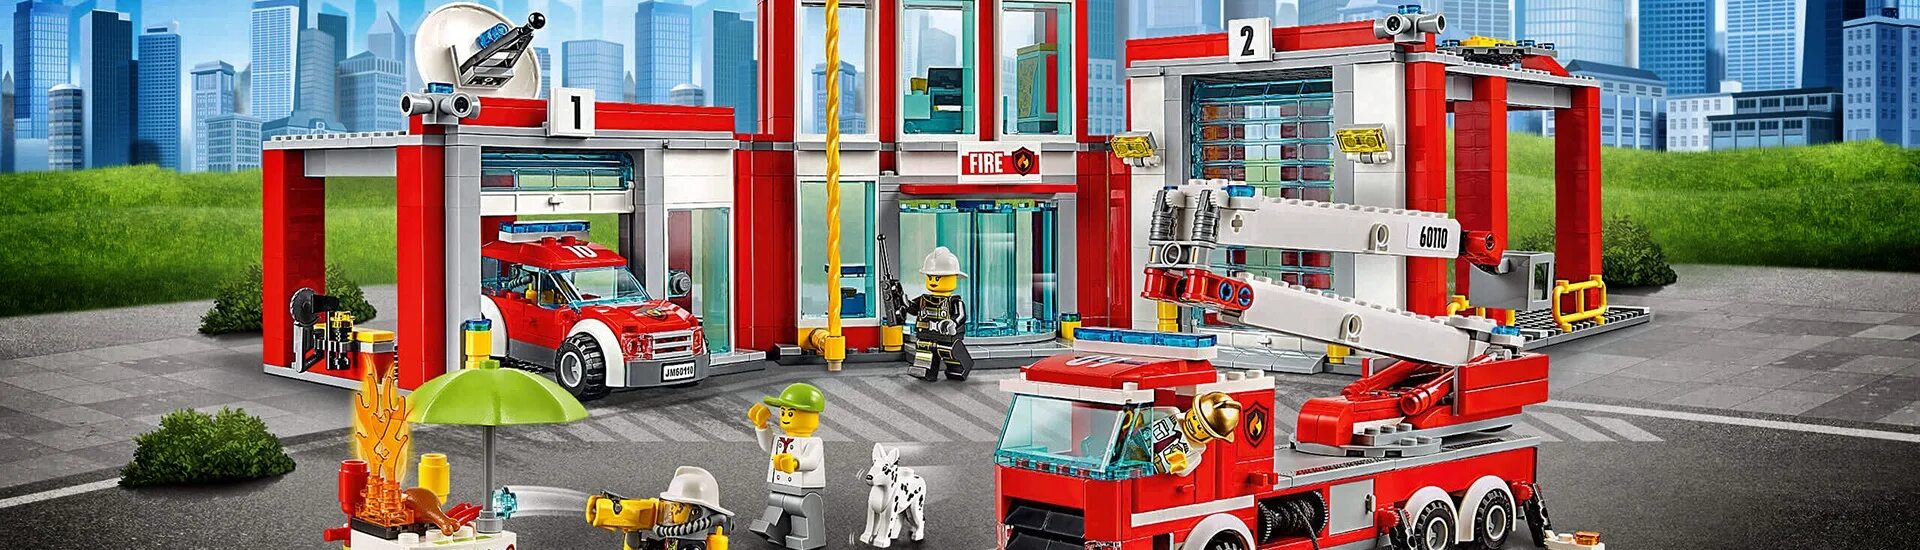 Сити пожарная. 60320 LEGO City. Fire Station. Лего Сити пожарные 2016. Vitrine LEGO City 60110. LEGO City Fire Station 2009.